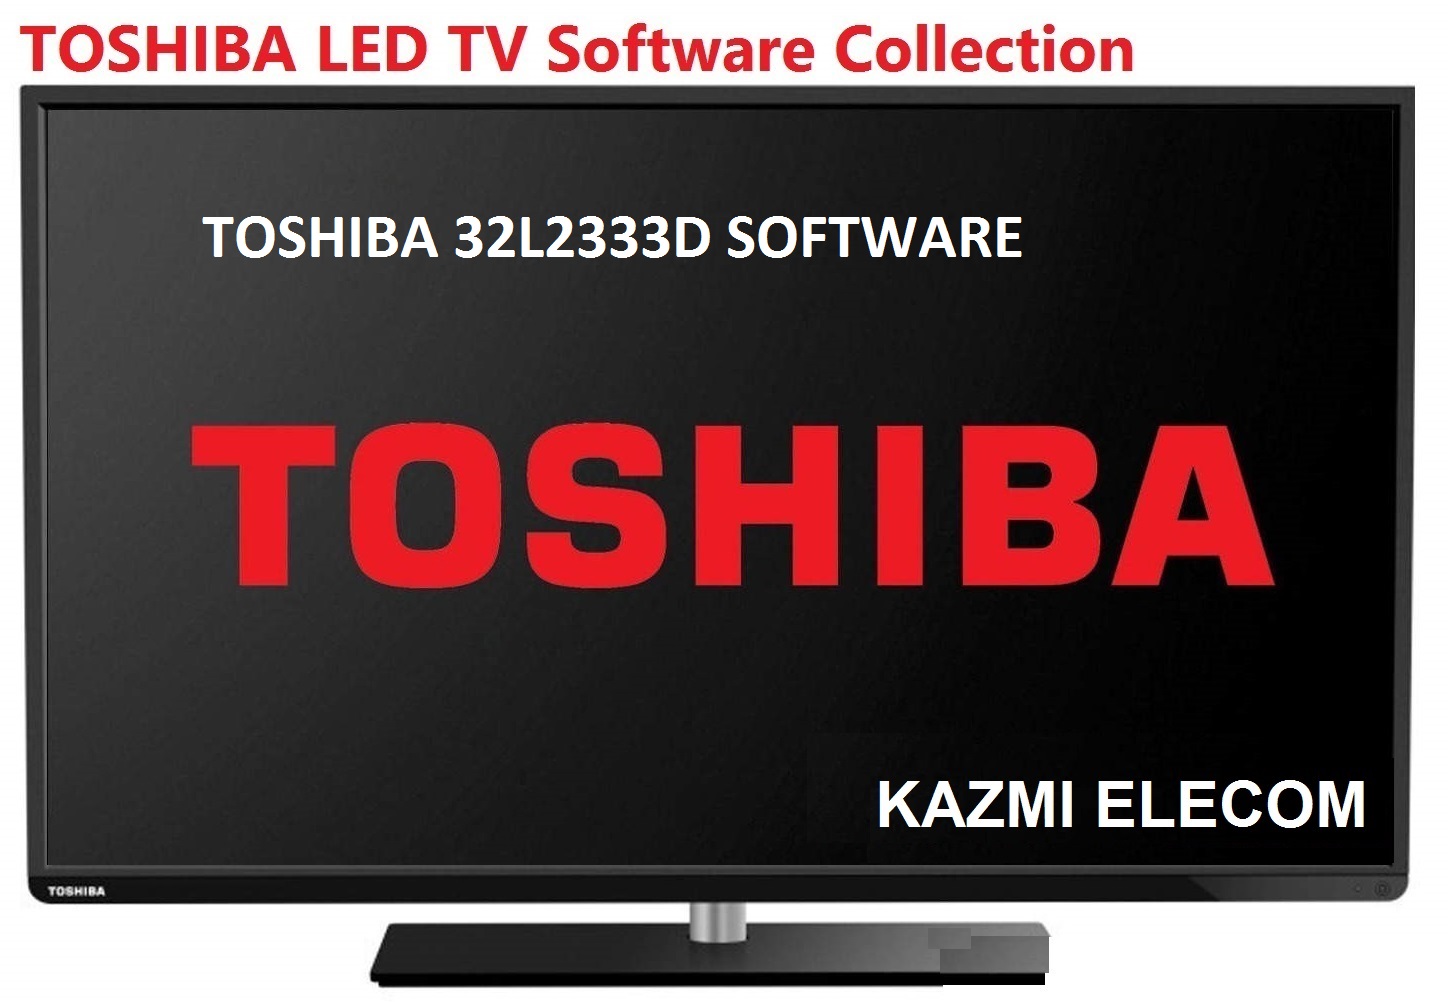 Toshiba 32L2333D